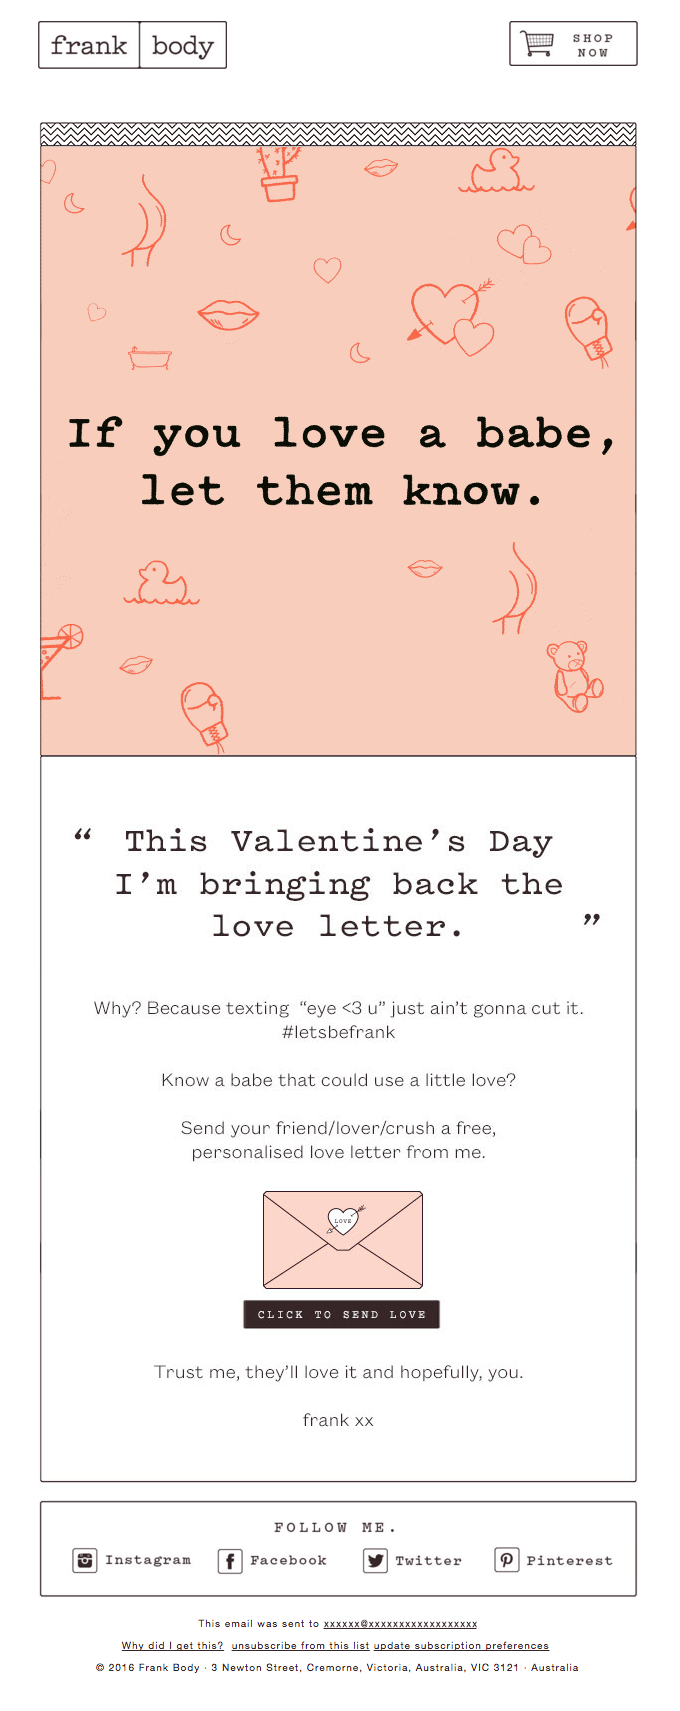 Frank-Body-Valentine-s-Day-Email